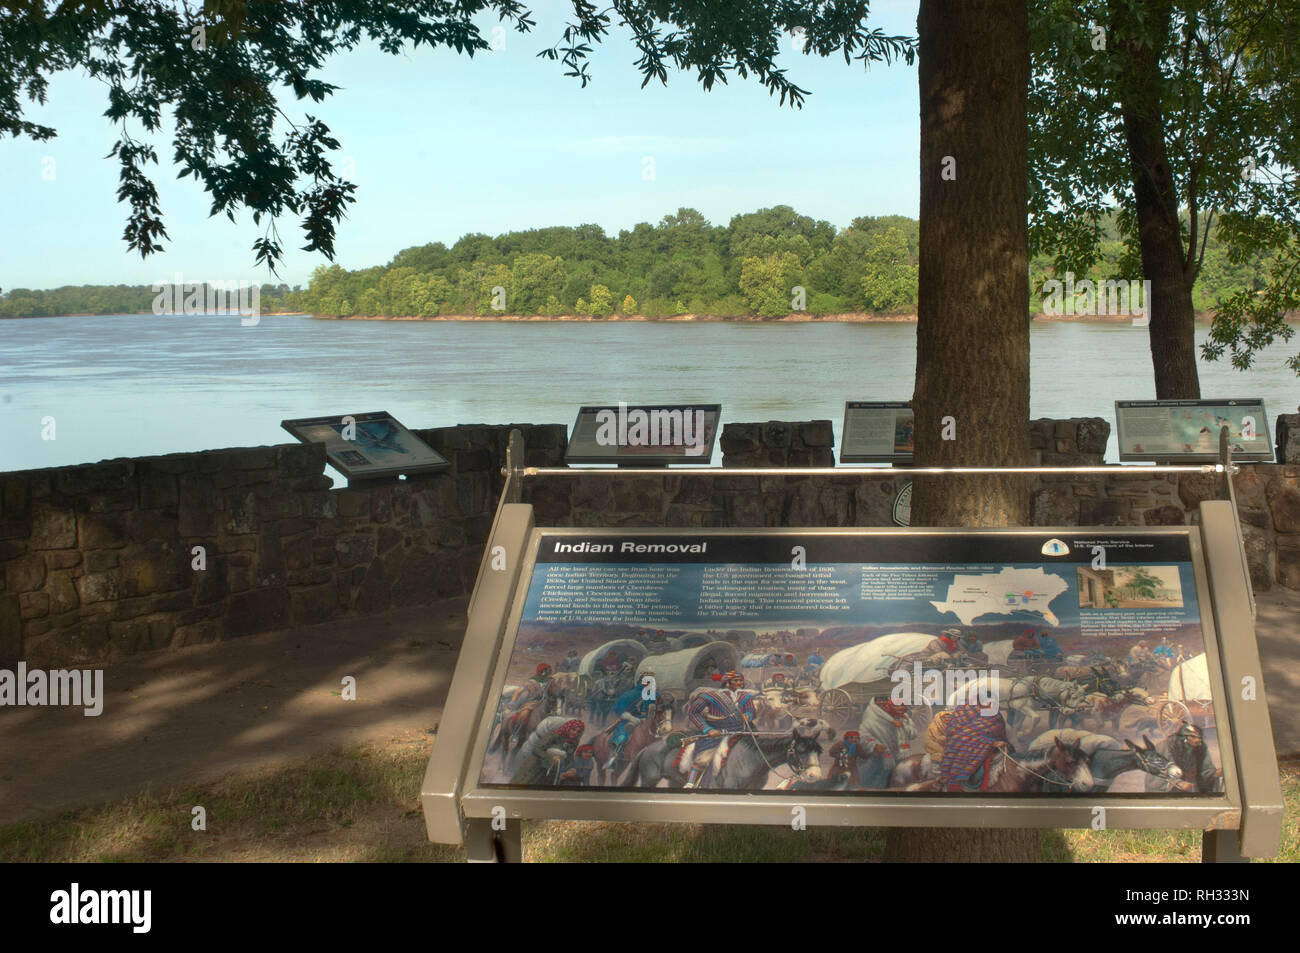 L'Arkansas River, original fin du sentier des larmes, Lieu historique national de Fort Smith, Arkansas. Photographie numérique Banque D'Images